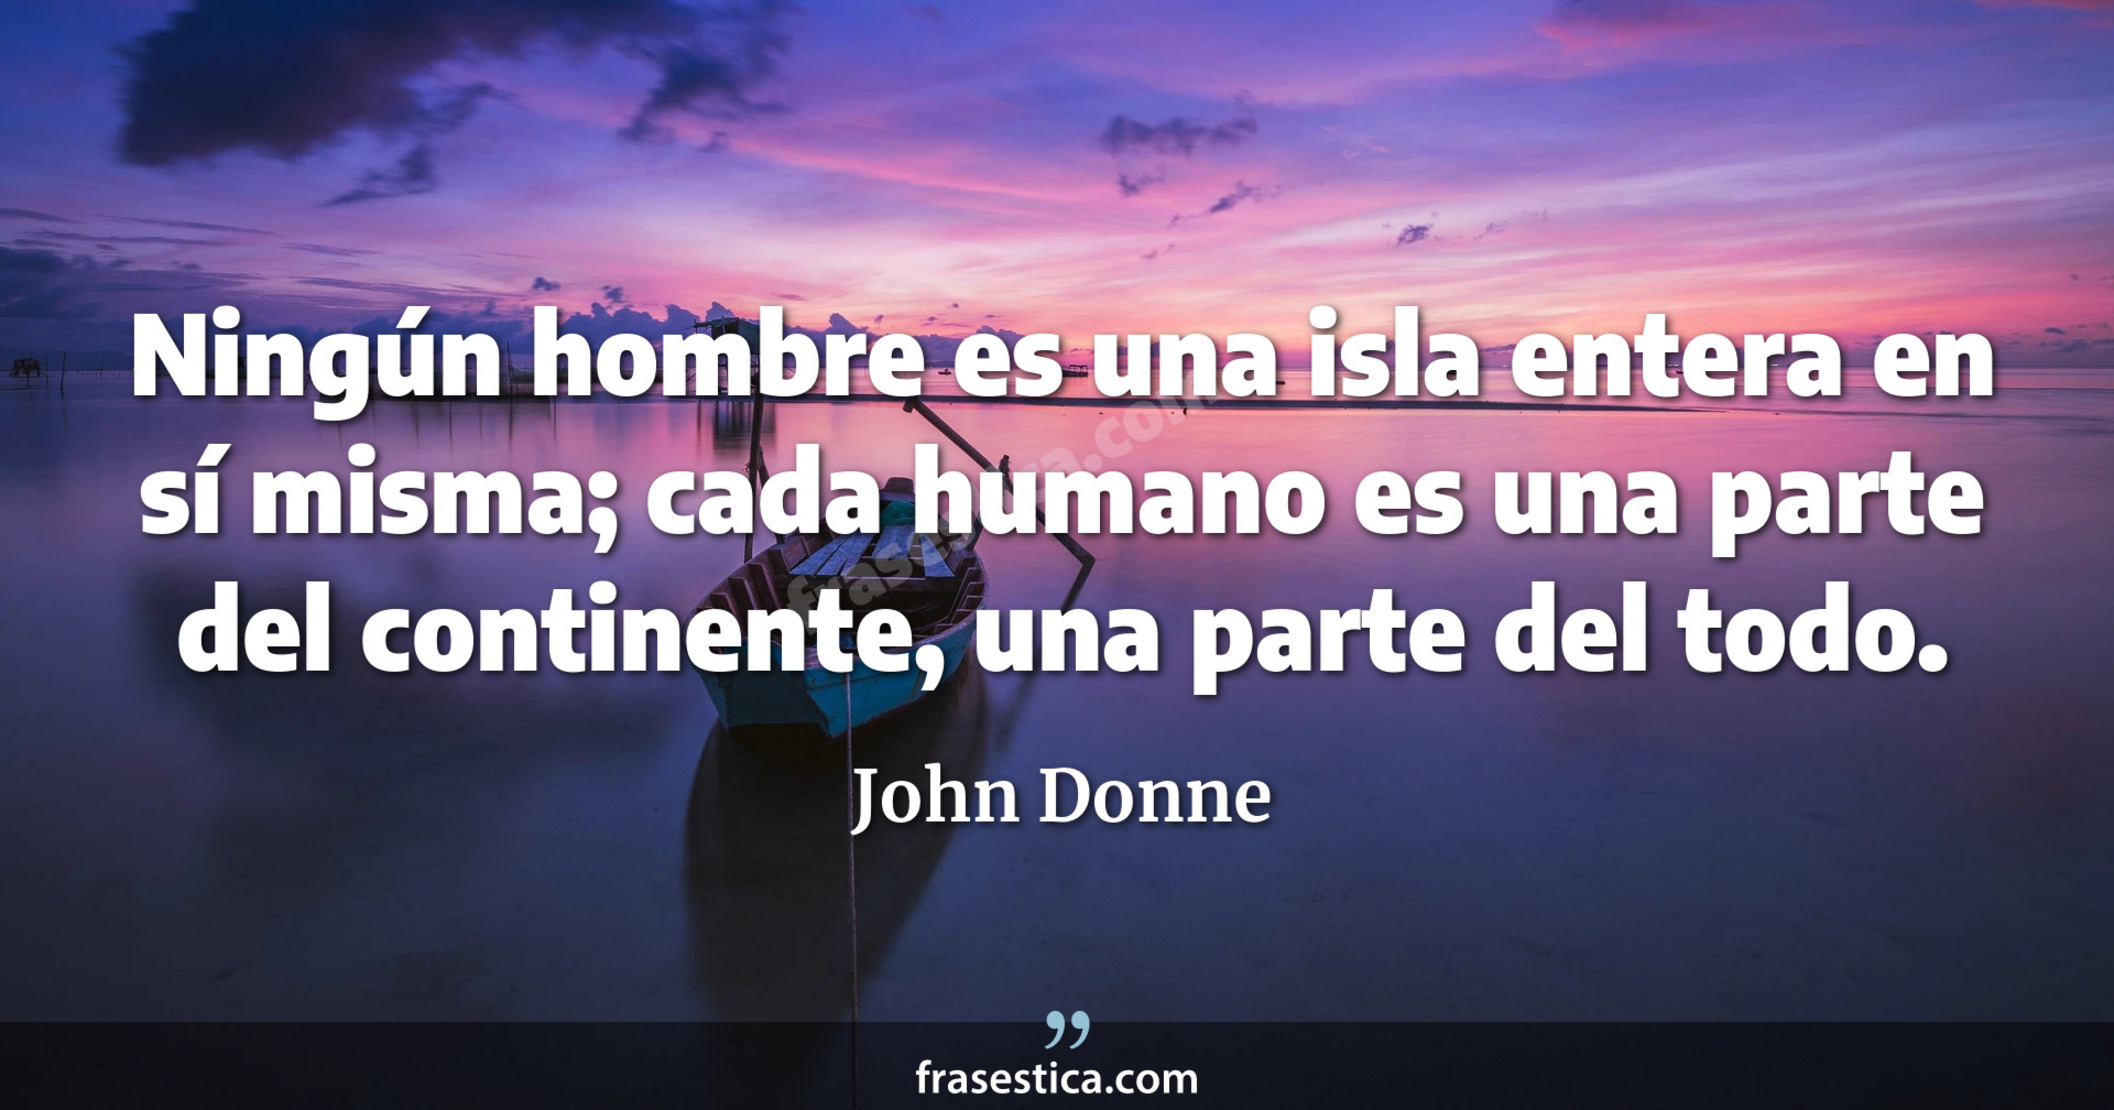 Ningún hombre es una isla entera en sí misma; cada humano es una parte del continente, una parte del todo. - John Donne